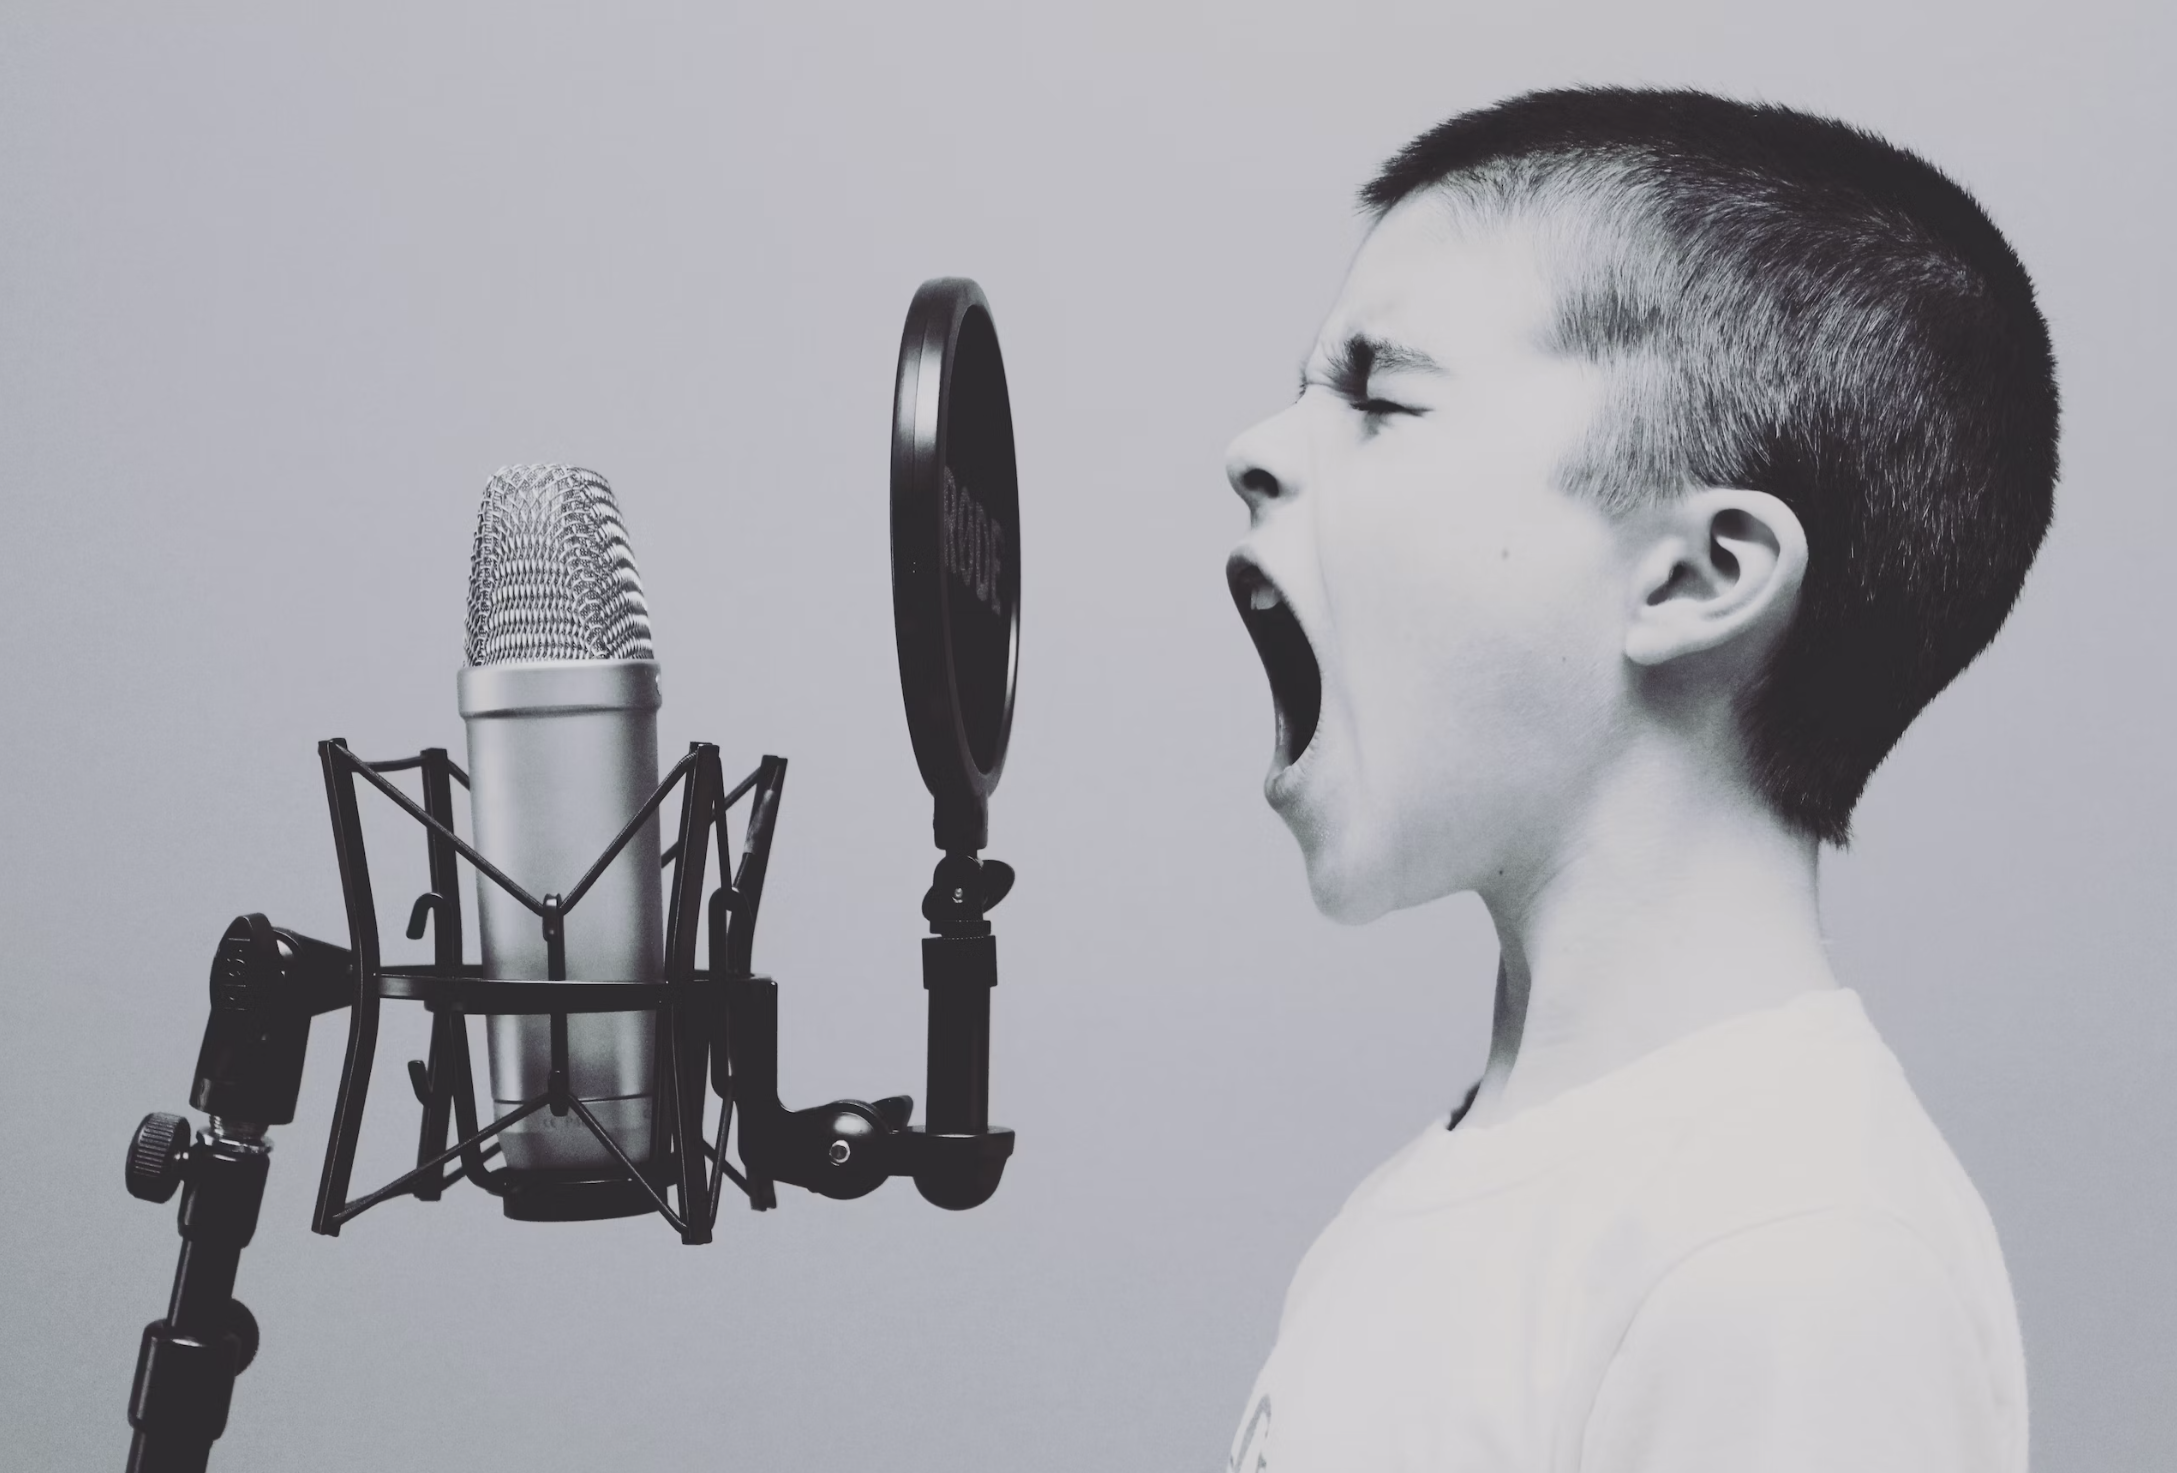 La contaminación acústica es un problema, el niño grita al micrófono